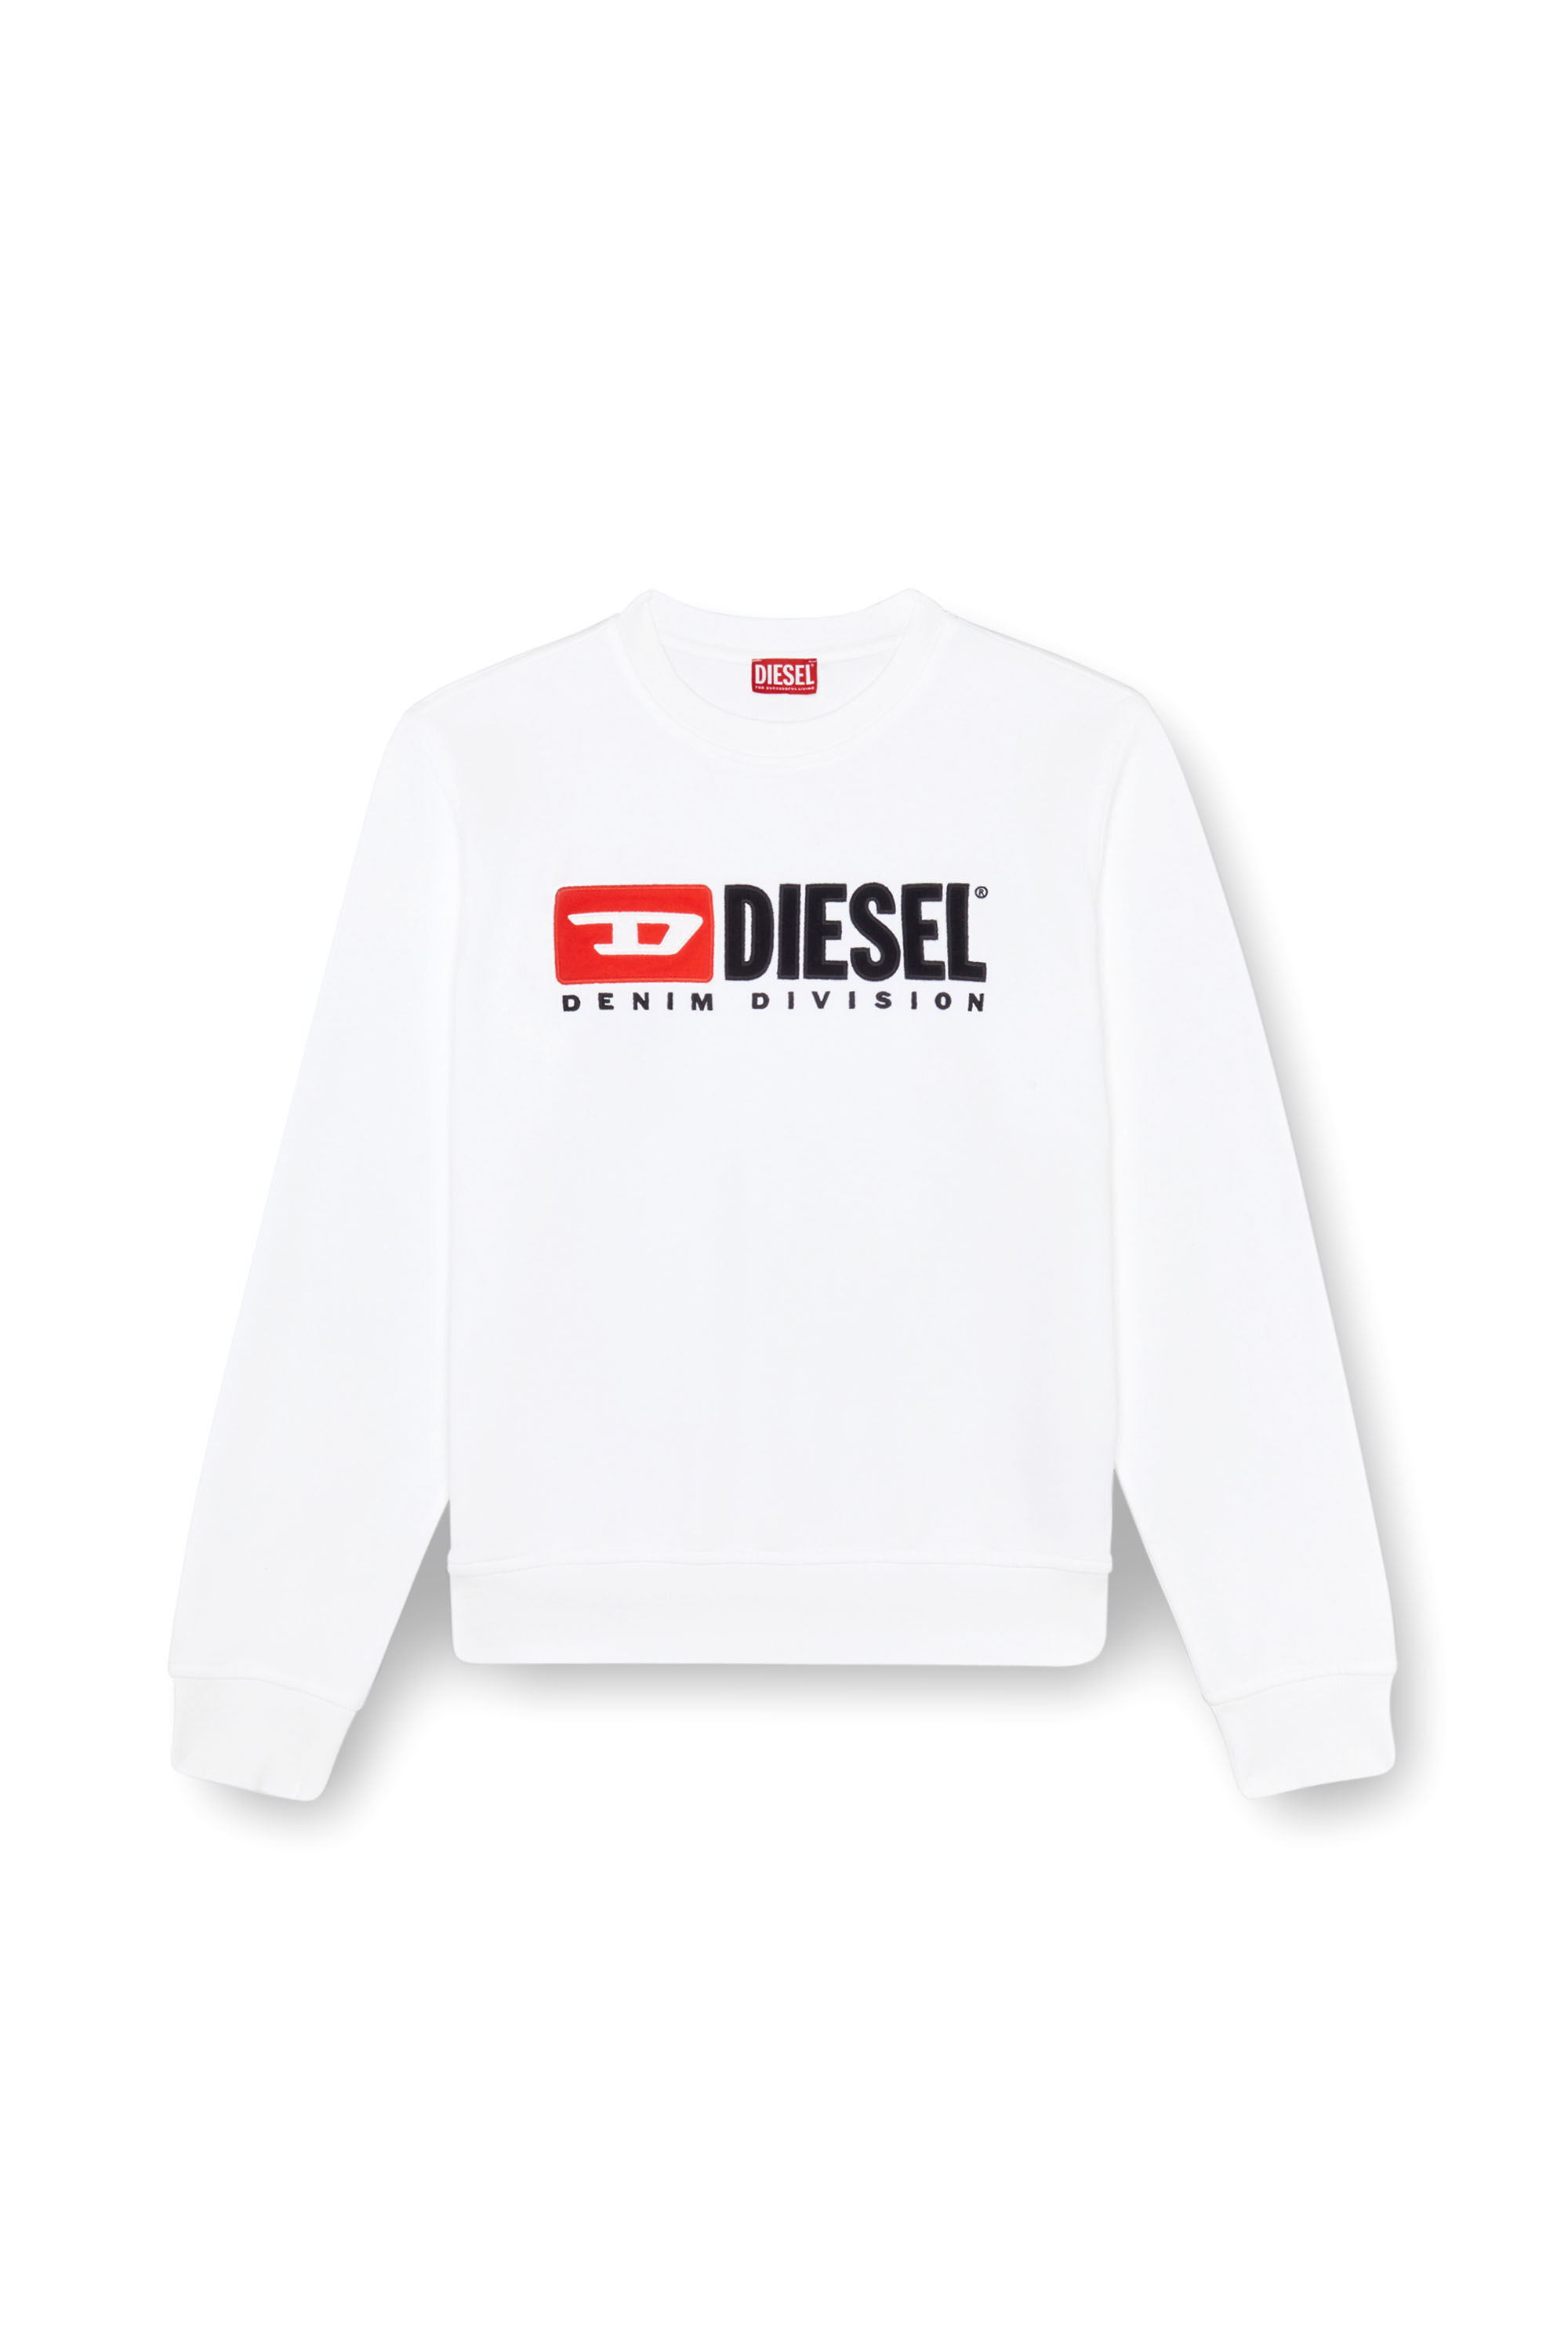 Diesel - S-BOXT-DIV, Herren Sweatshirt mit Denim Division-Logo in Weiss - Image 2